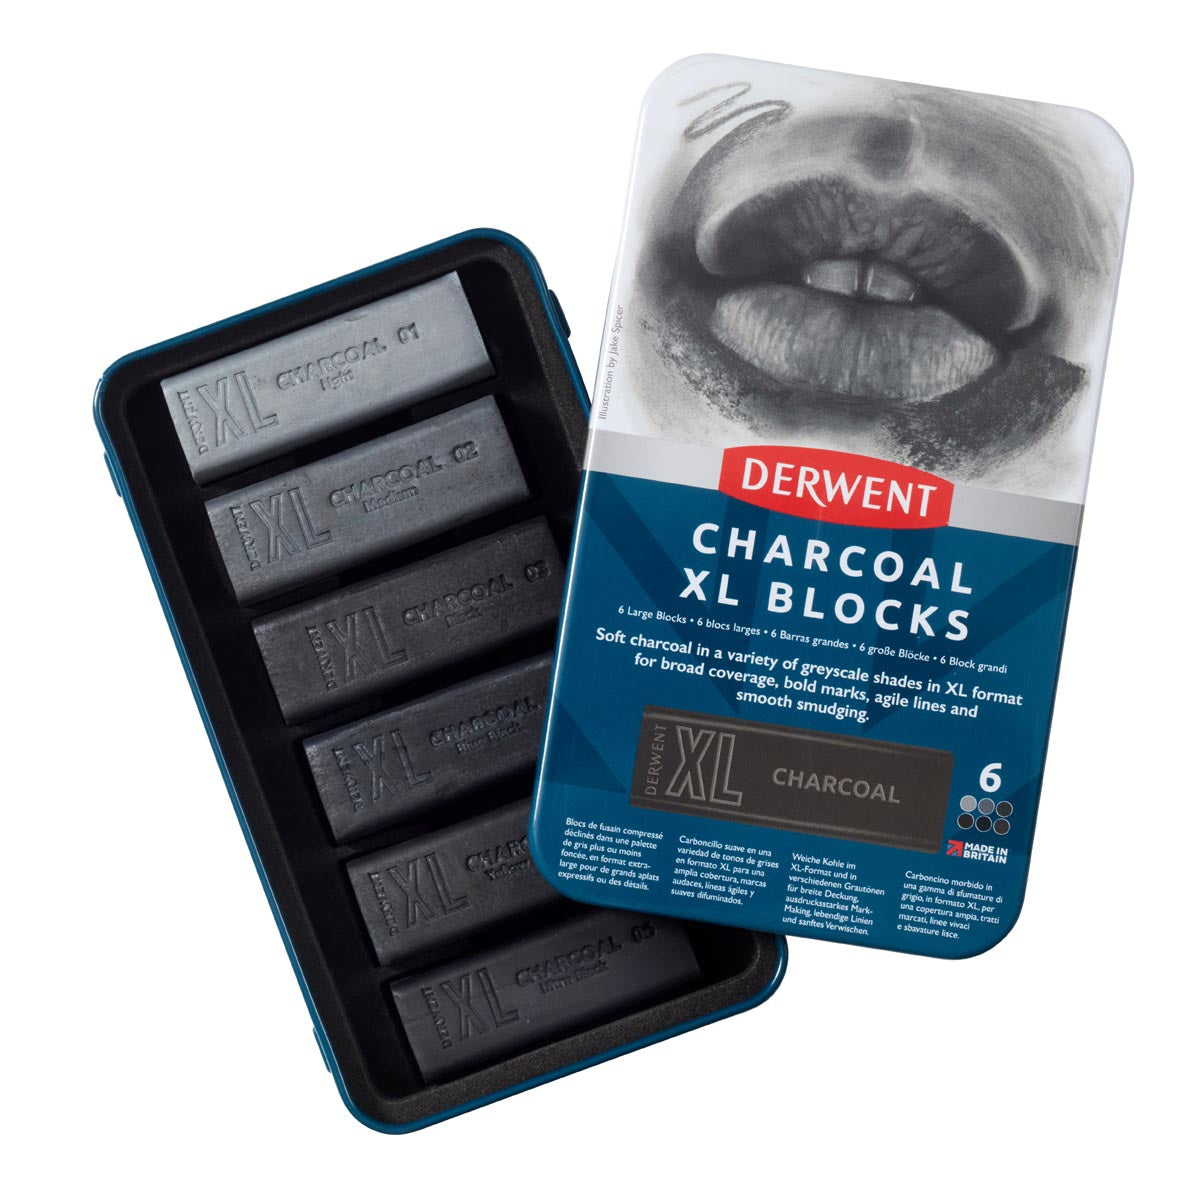 Derwent - Charcoal XL -blokken - 6 tin